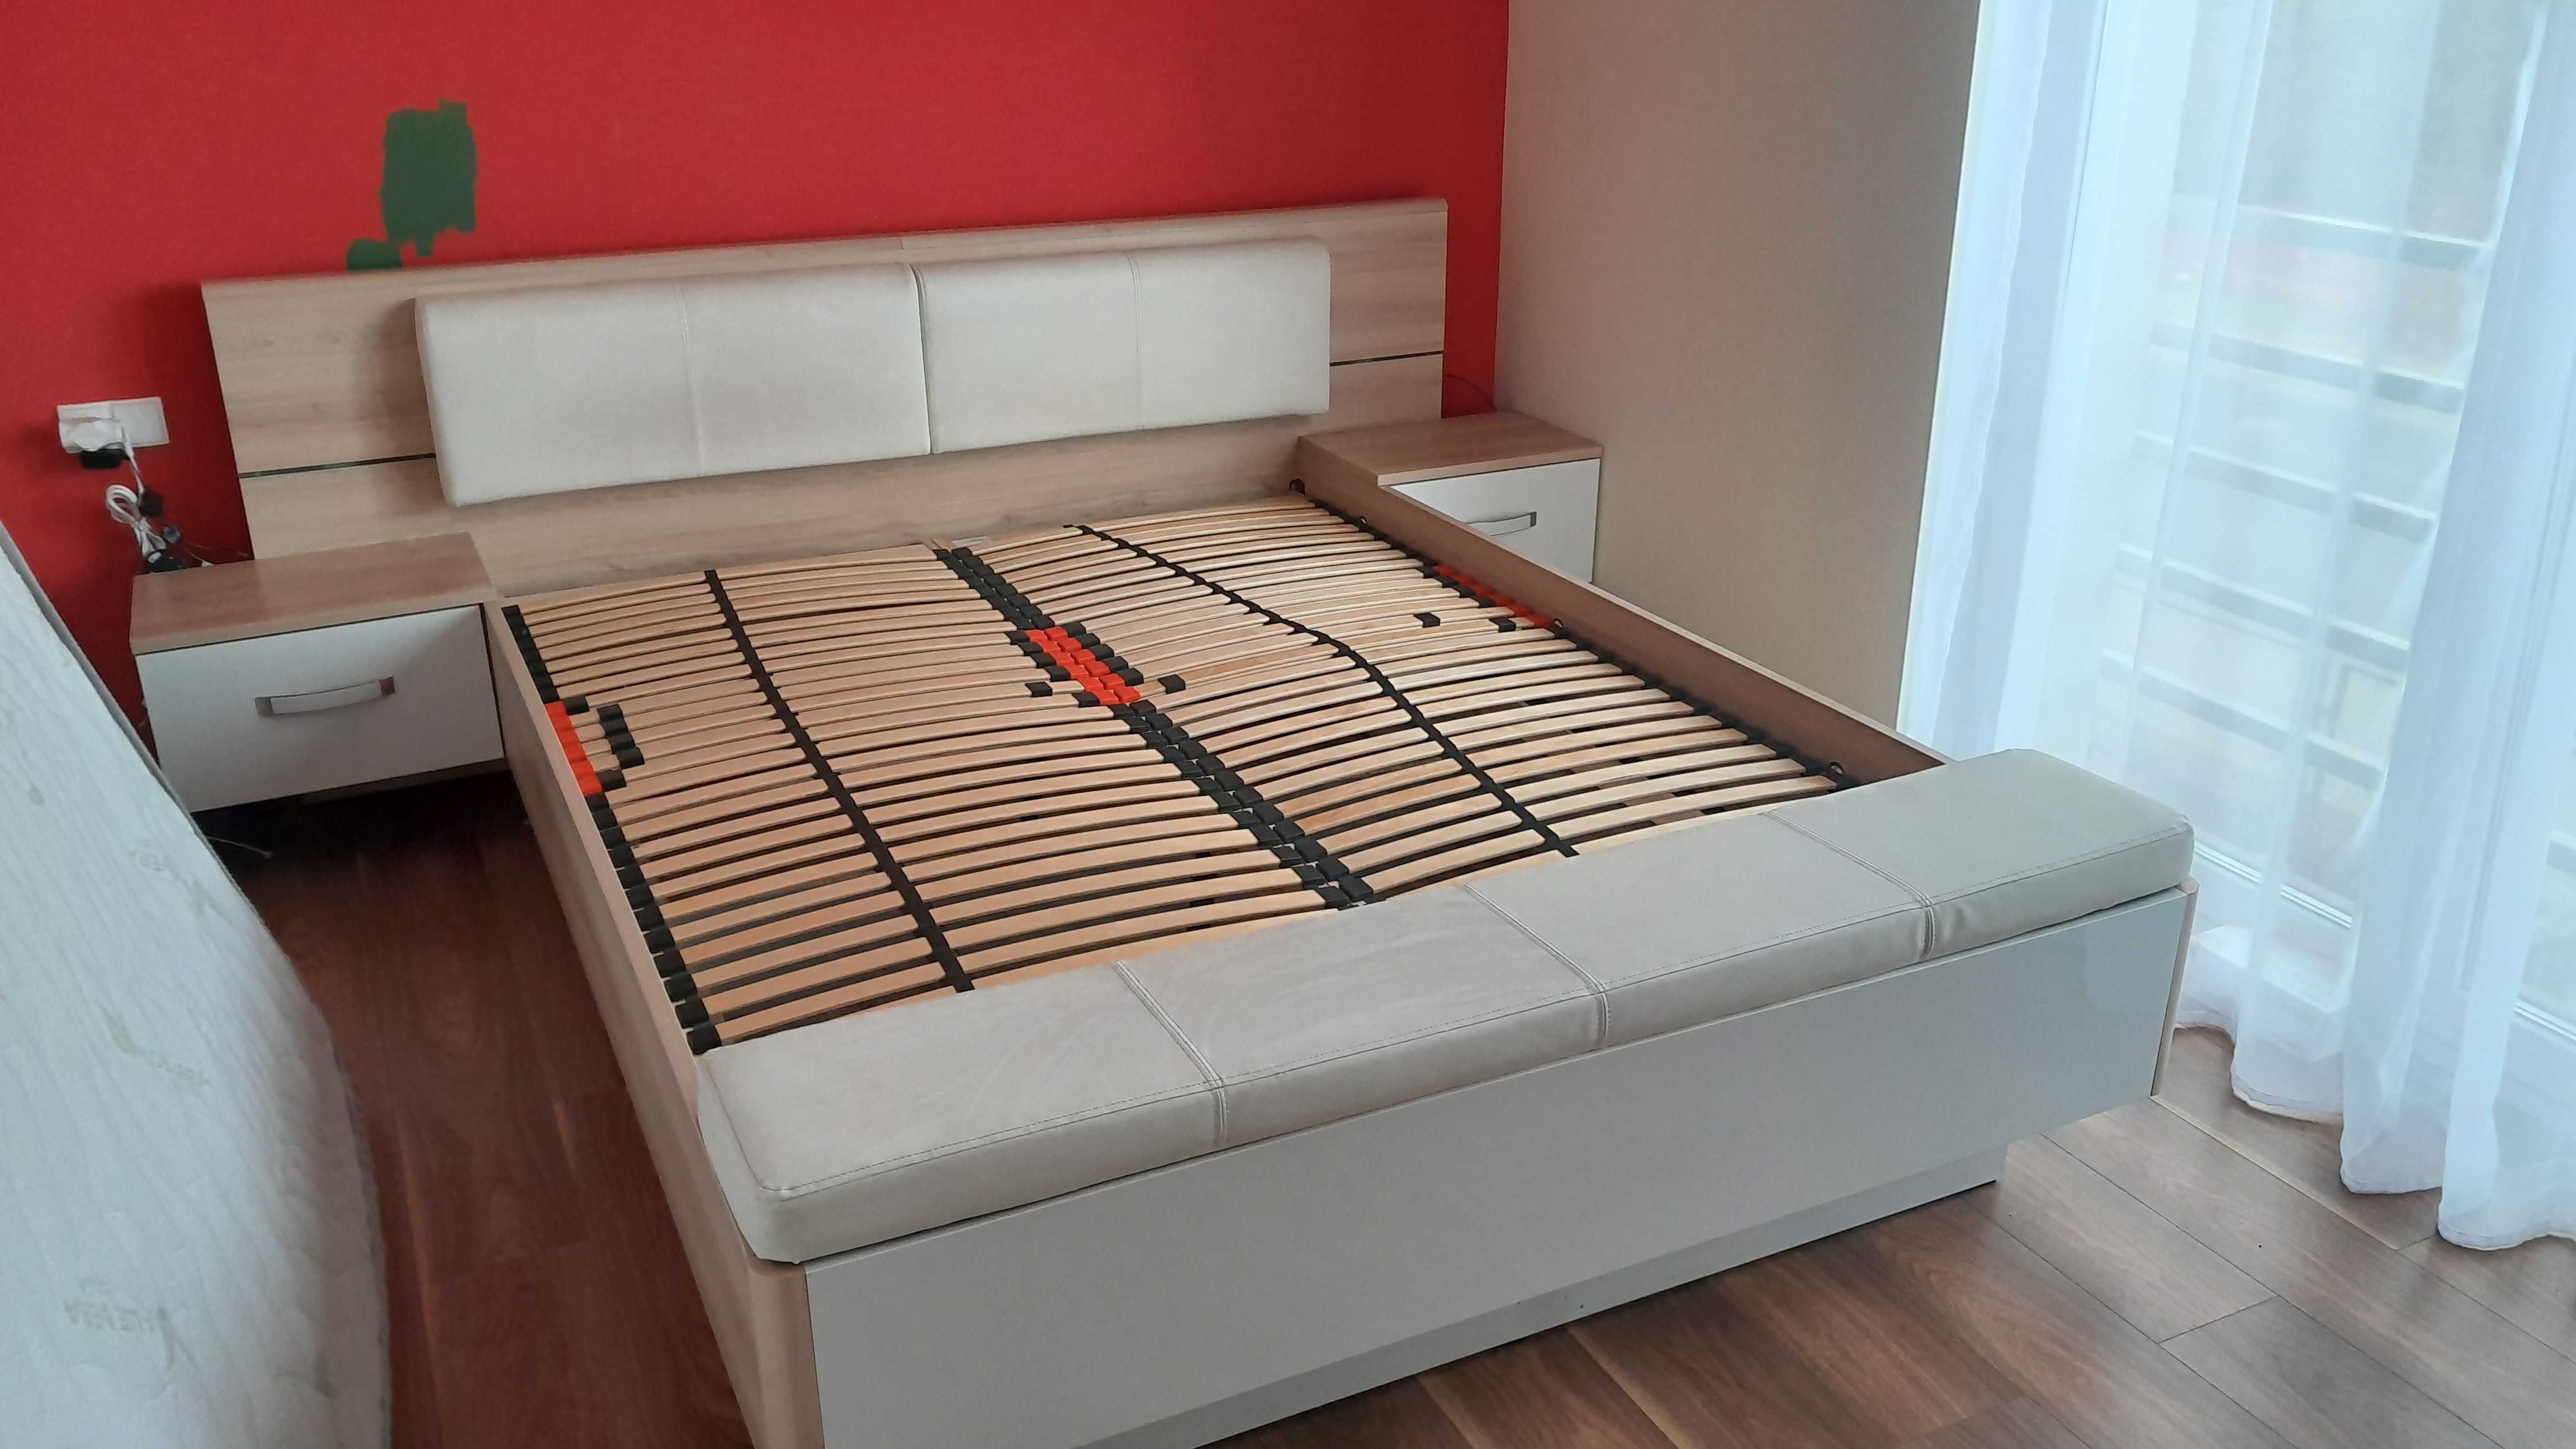 Łóżko RECOVER z szafkami i łąwą Duże Materac 200x160 Agata Meble